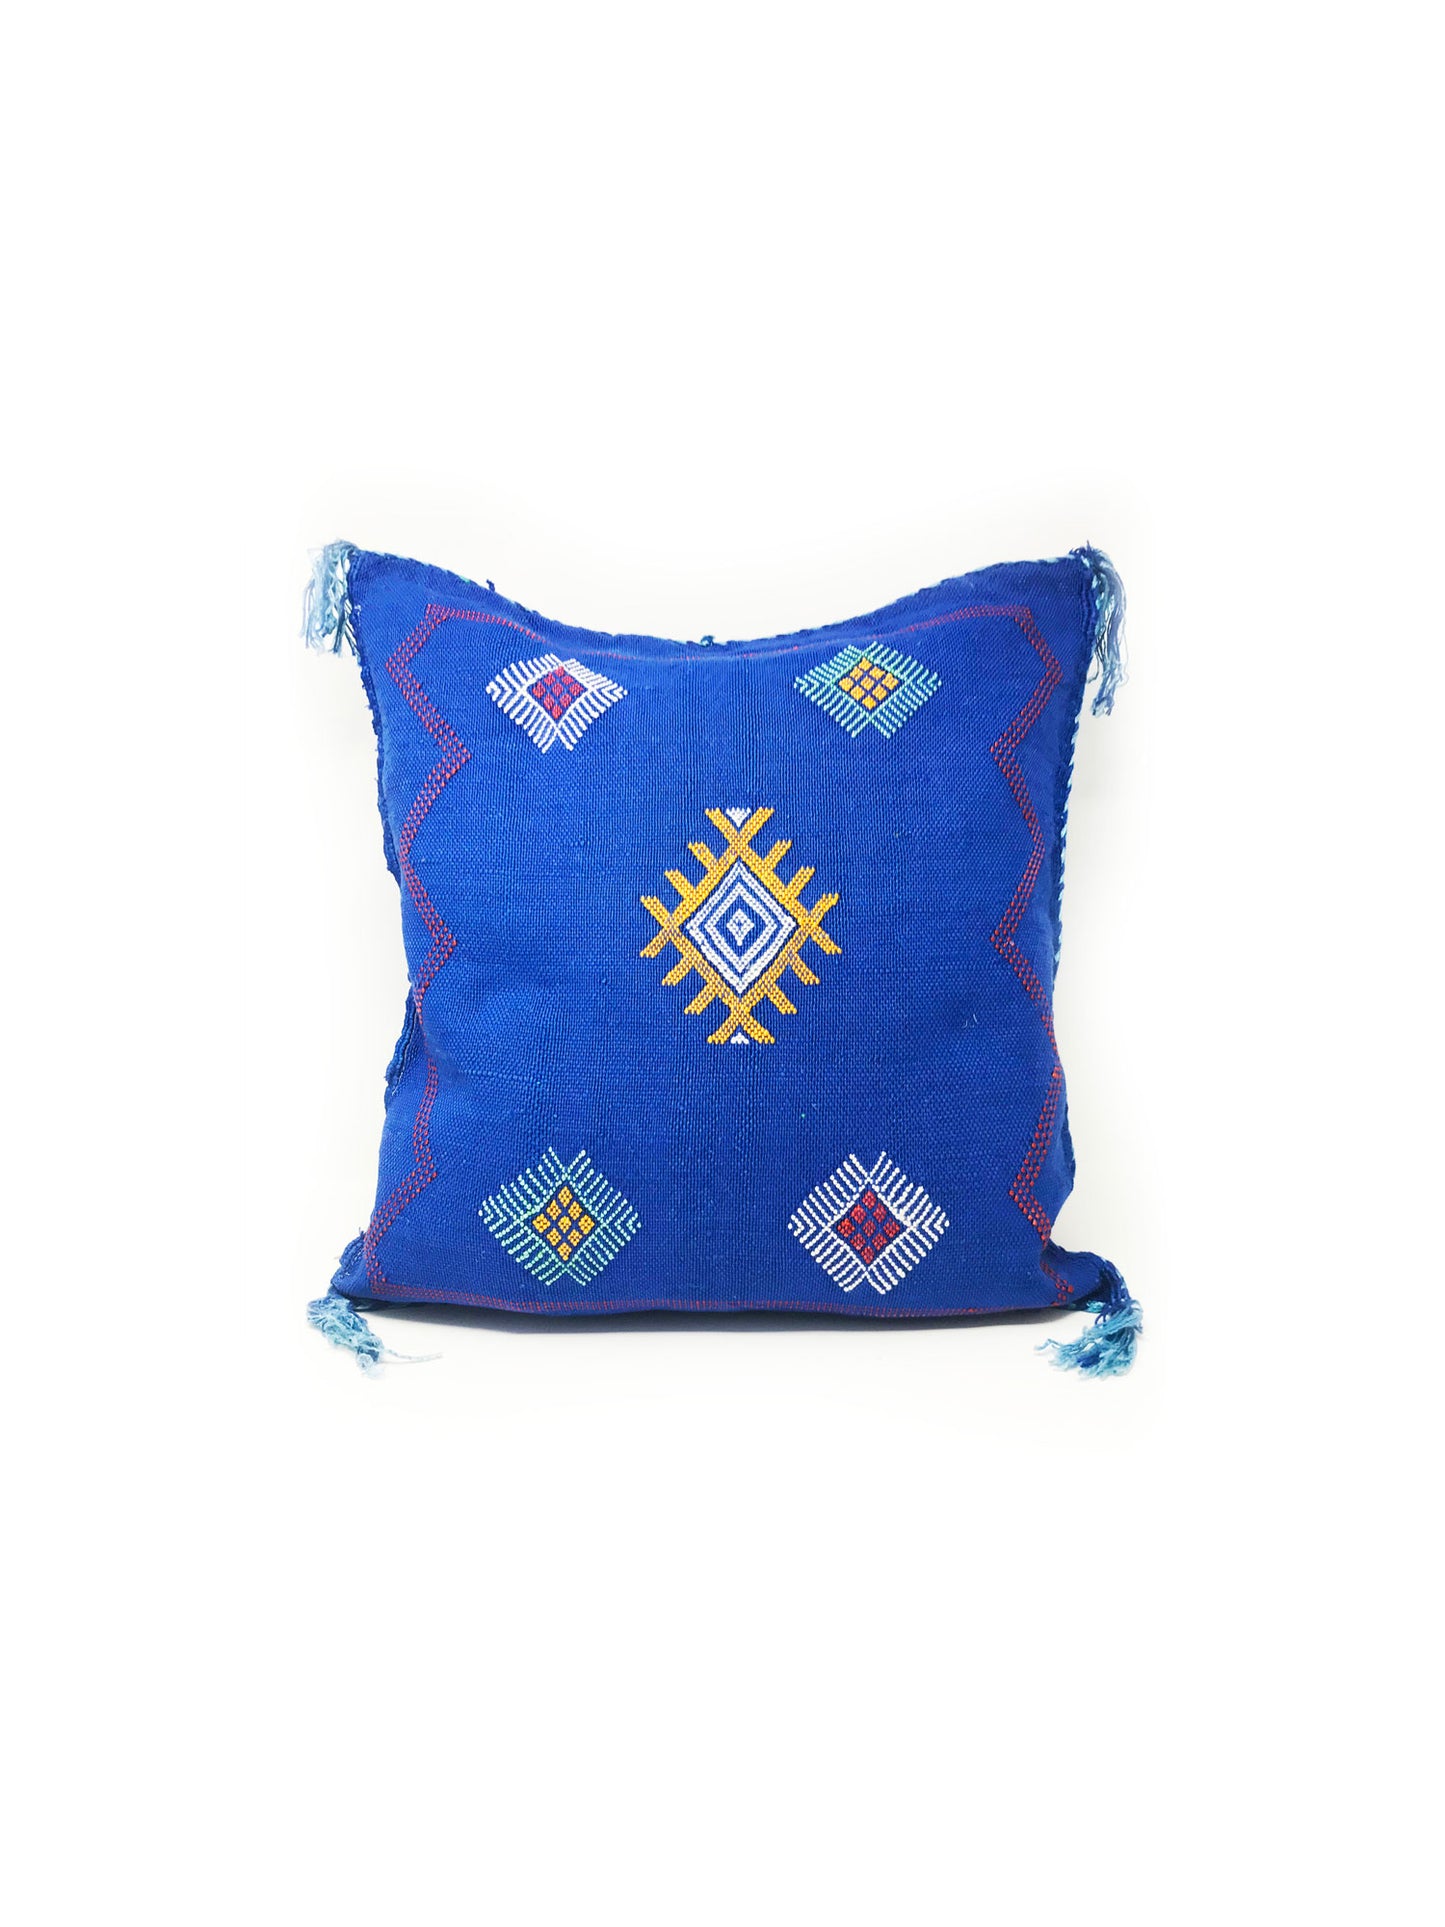 Violeta Pillow Cover Blue